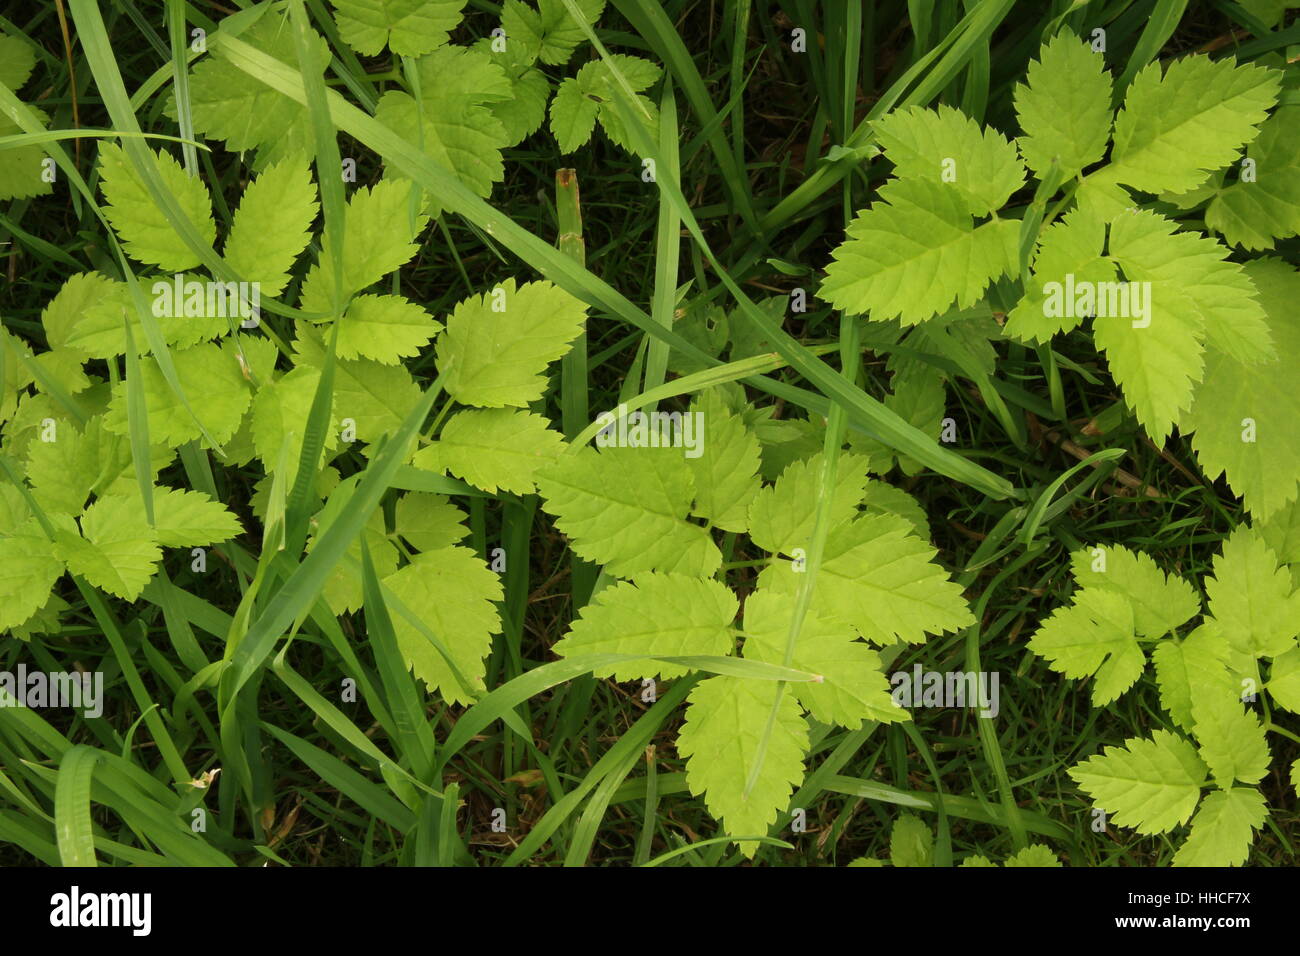 La lutte contre les mauvaises herbes, Page, feuille, plante, nature, macro, close-up, Close up, admission macro Banque D'Images